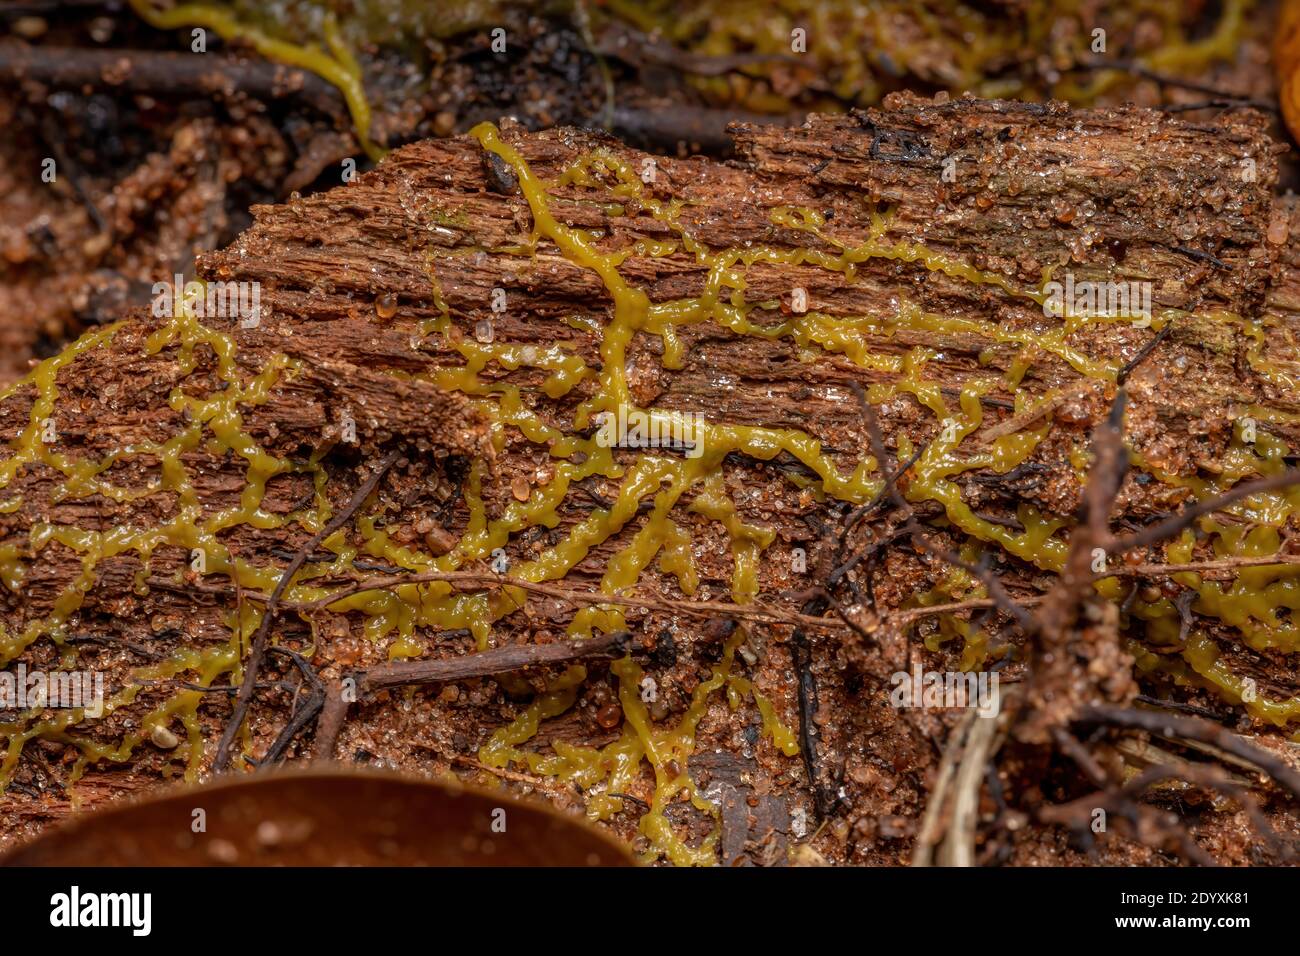 Plasmide del calce molte teste della specie Physarum il policefalo si diffonde su una radice di un albero Foto Stock